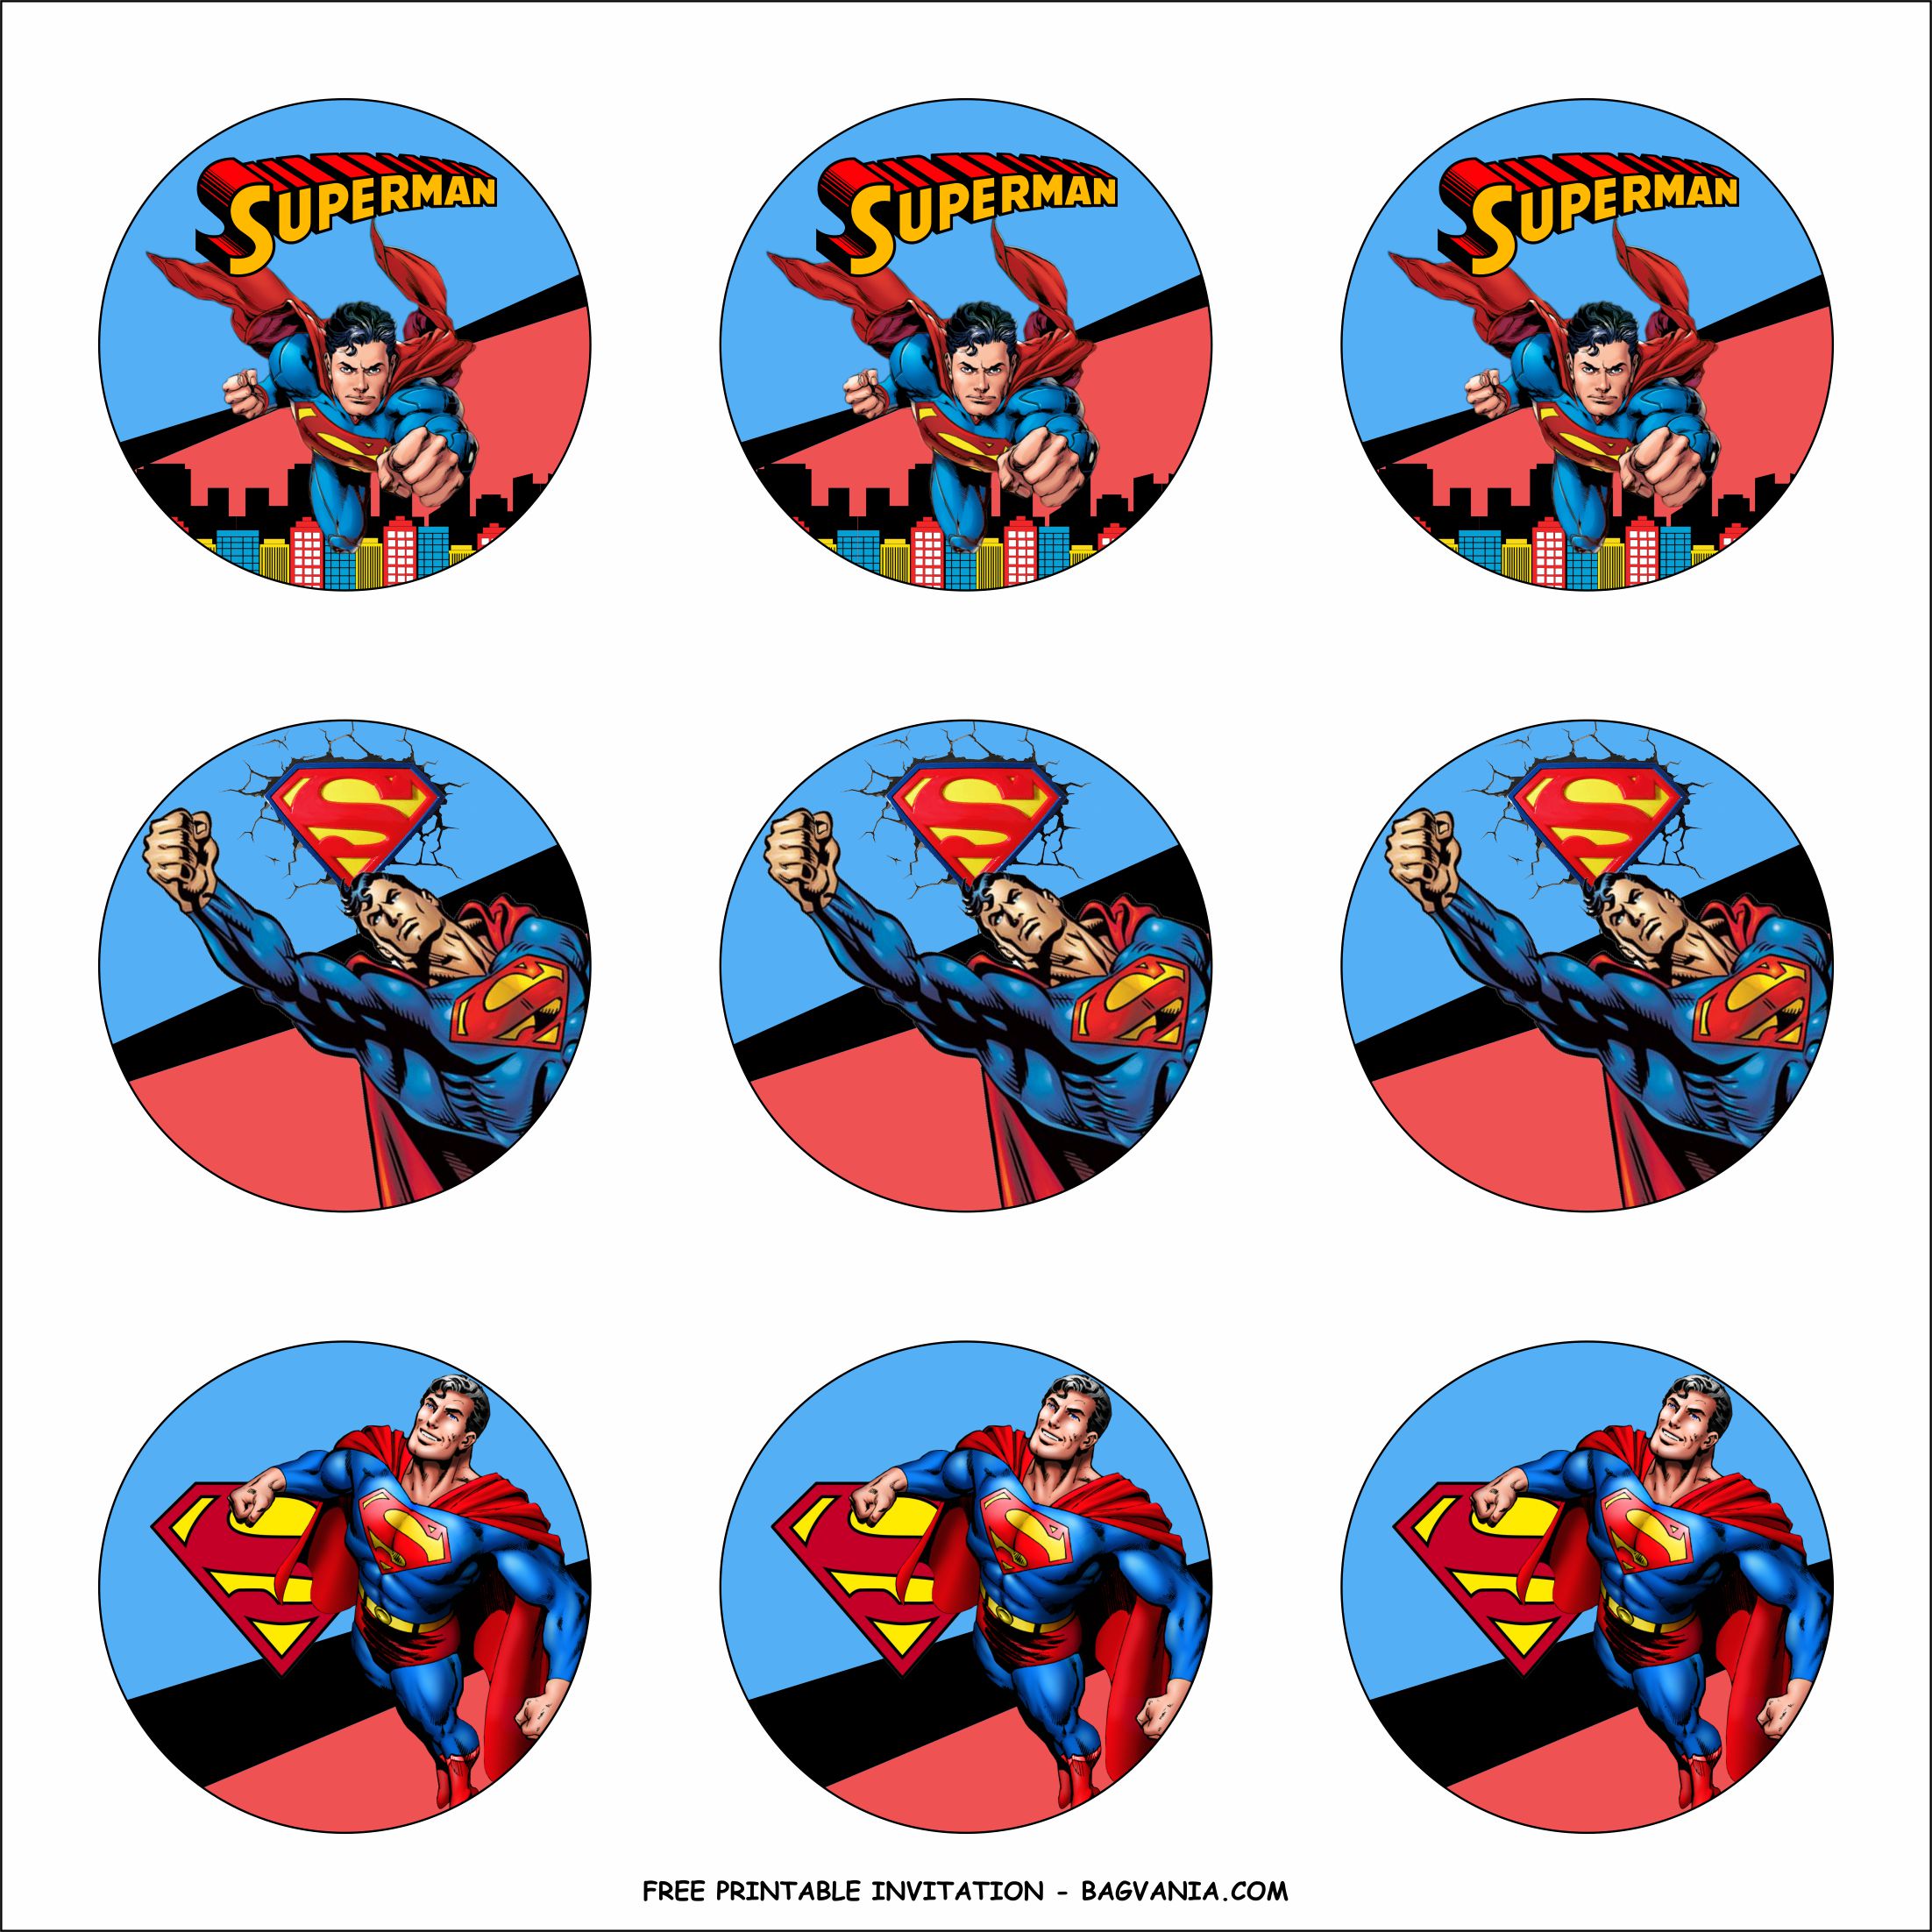 Free Printable Superman Birthday Party Kits Template Free Printable Birthday Invitation Templates Bagvania